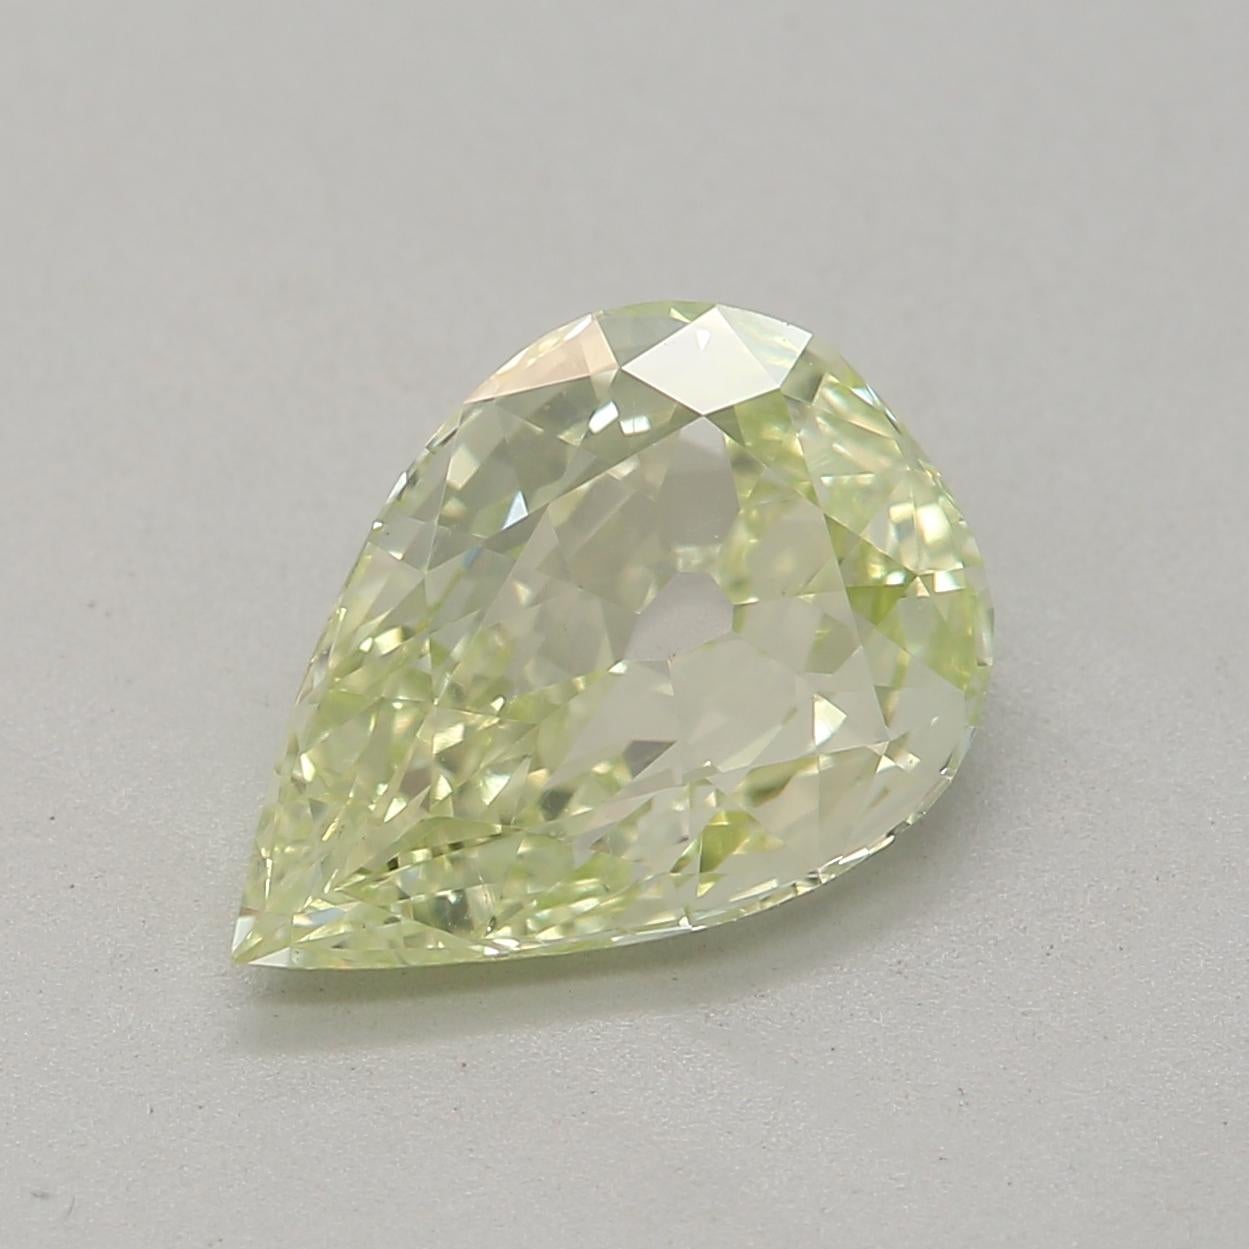 *100% NATÜRLICHE FANCY-DIAMANTEN*

Diamant Details

➛ Form: Birne
➛ Farbgrad: Fancy Gelb Grün 
➛ Karat: 1,03
➛ Klarheit: Si1
➛ GIA zertifiziert 

^MERKMALE DES DIAMANTEN^

Dieser Diamant im Birnenschliff hat eine einzigartige und elegante Form, die